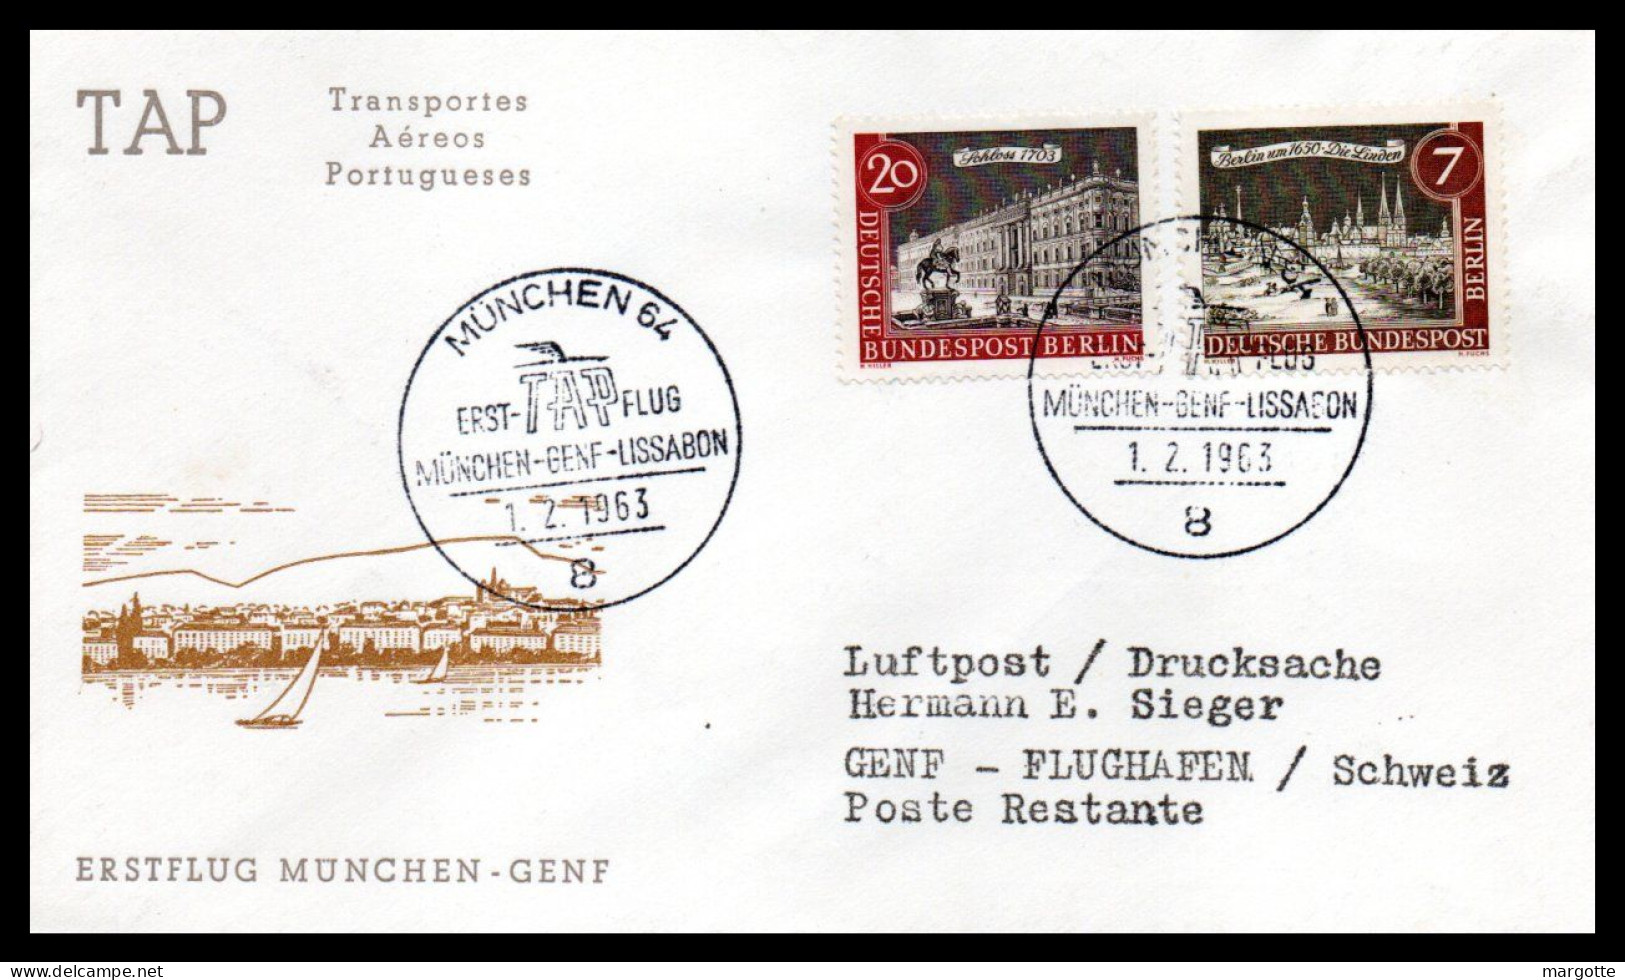 FFC TAP  Munchen-Genf-Lissabon  01/02/1963 - Primi Voli